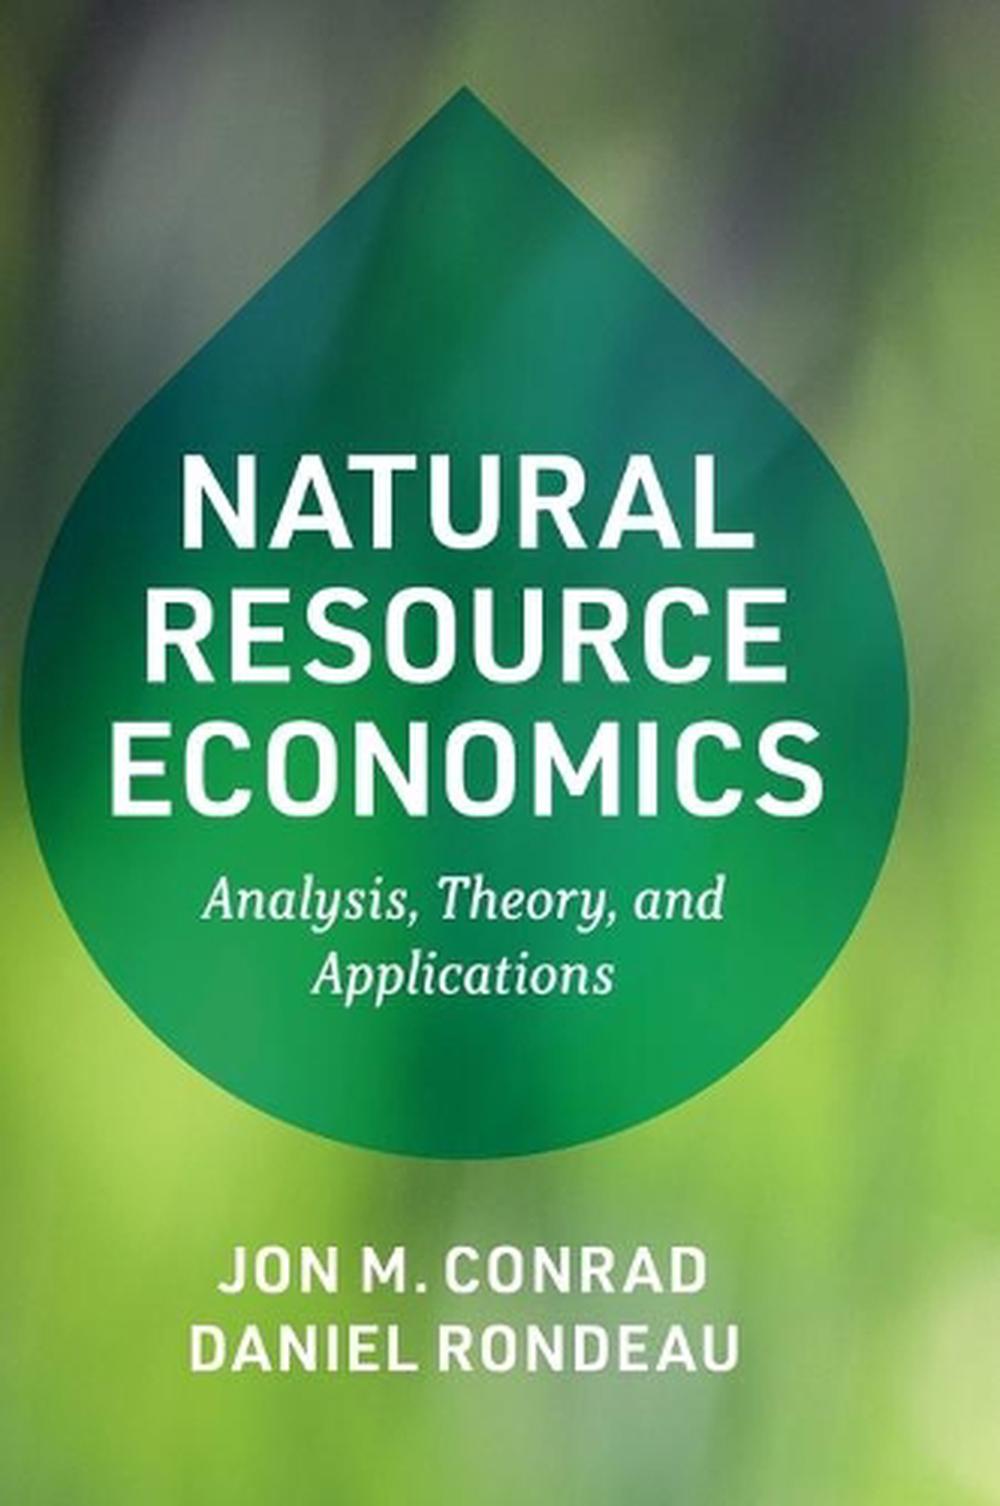 natural resource economics research topics